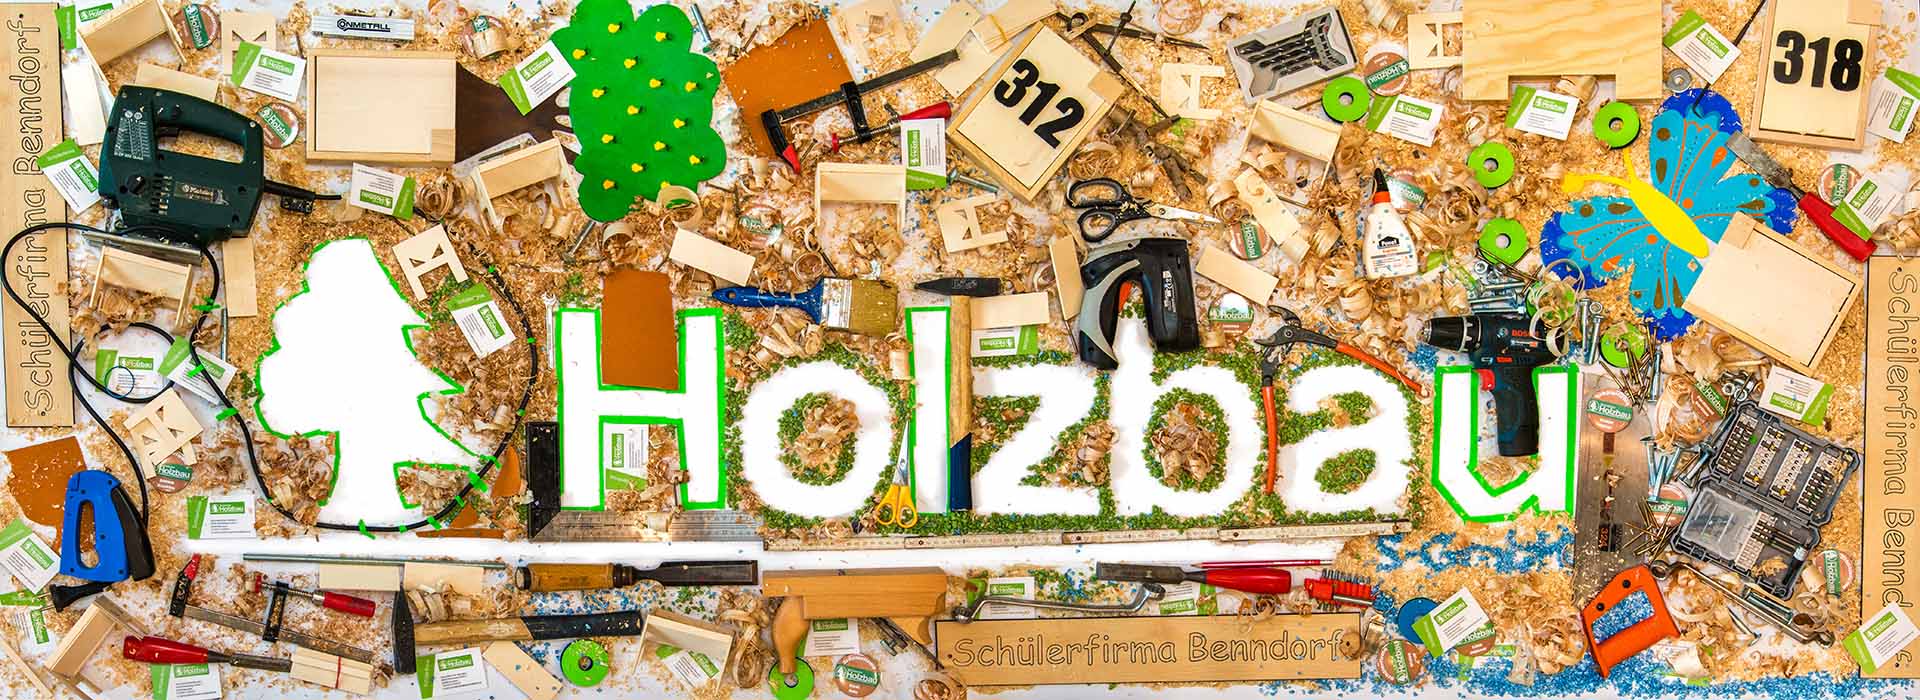 Wiebke Kirchner, Workshop "zoom in zoom out" - kreative Gestaltung von Schülerfirmenlogos durch die Deutsche Kinder- und Jugendstiftung mit der Schülerfirma Benndorfer Holzbau S-GmbH, Halle (Saale) 2022